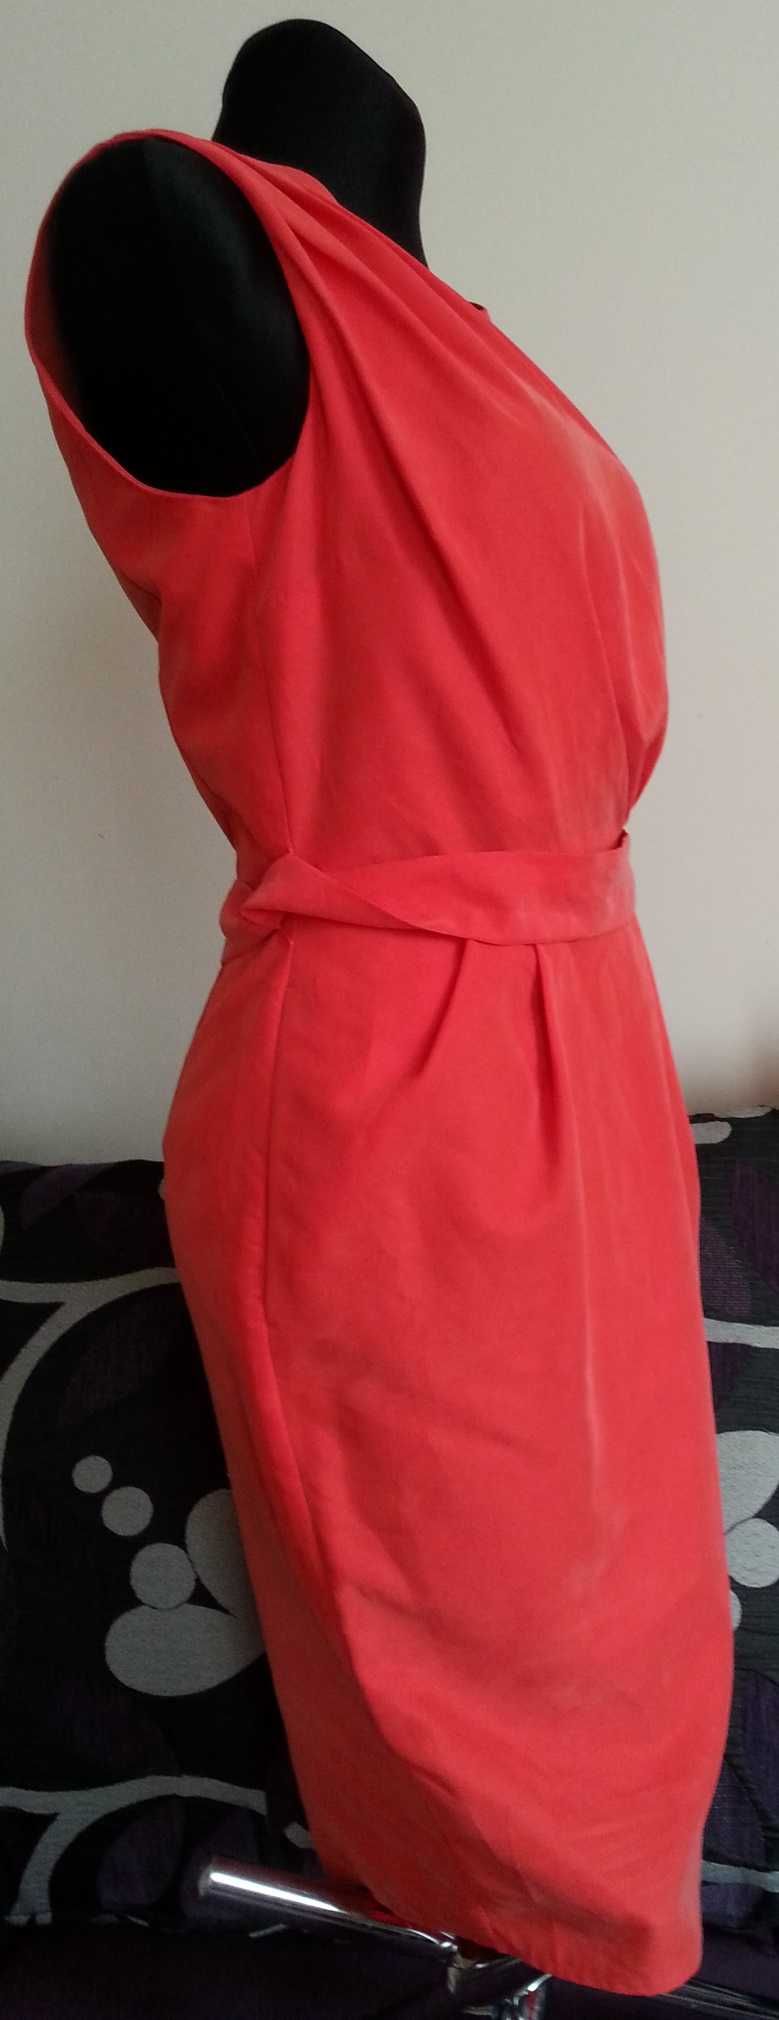 sukienka 36/S kieszenie wiązany tył #naturalny skład modal